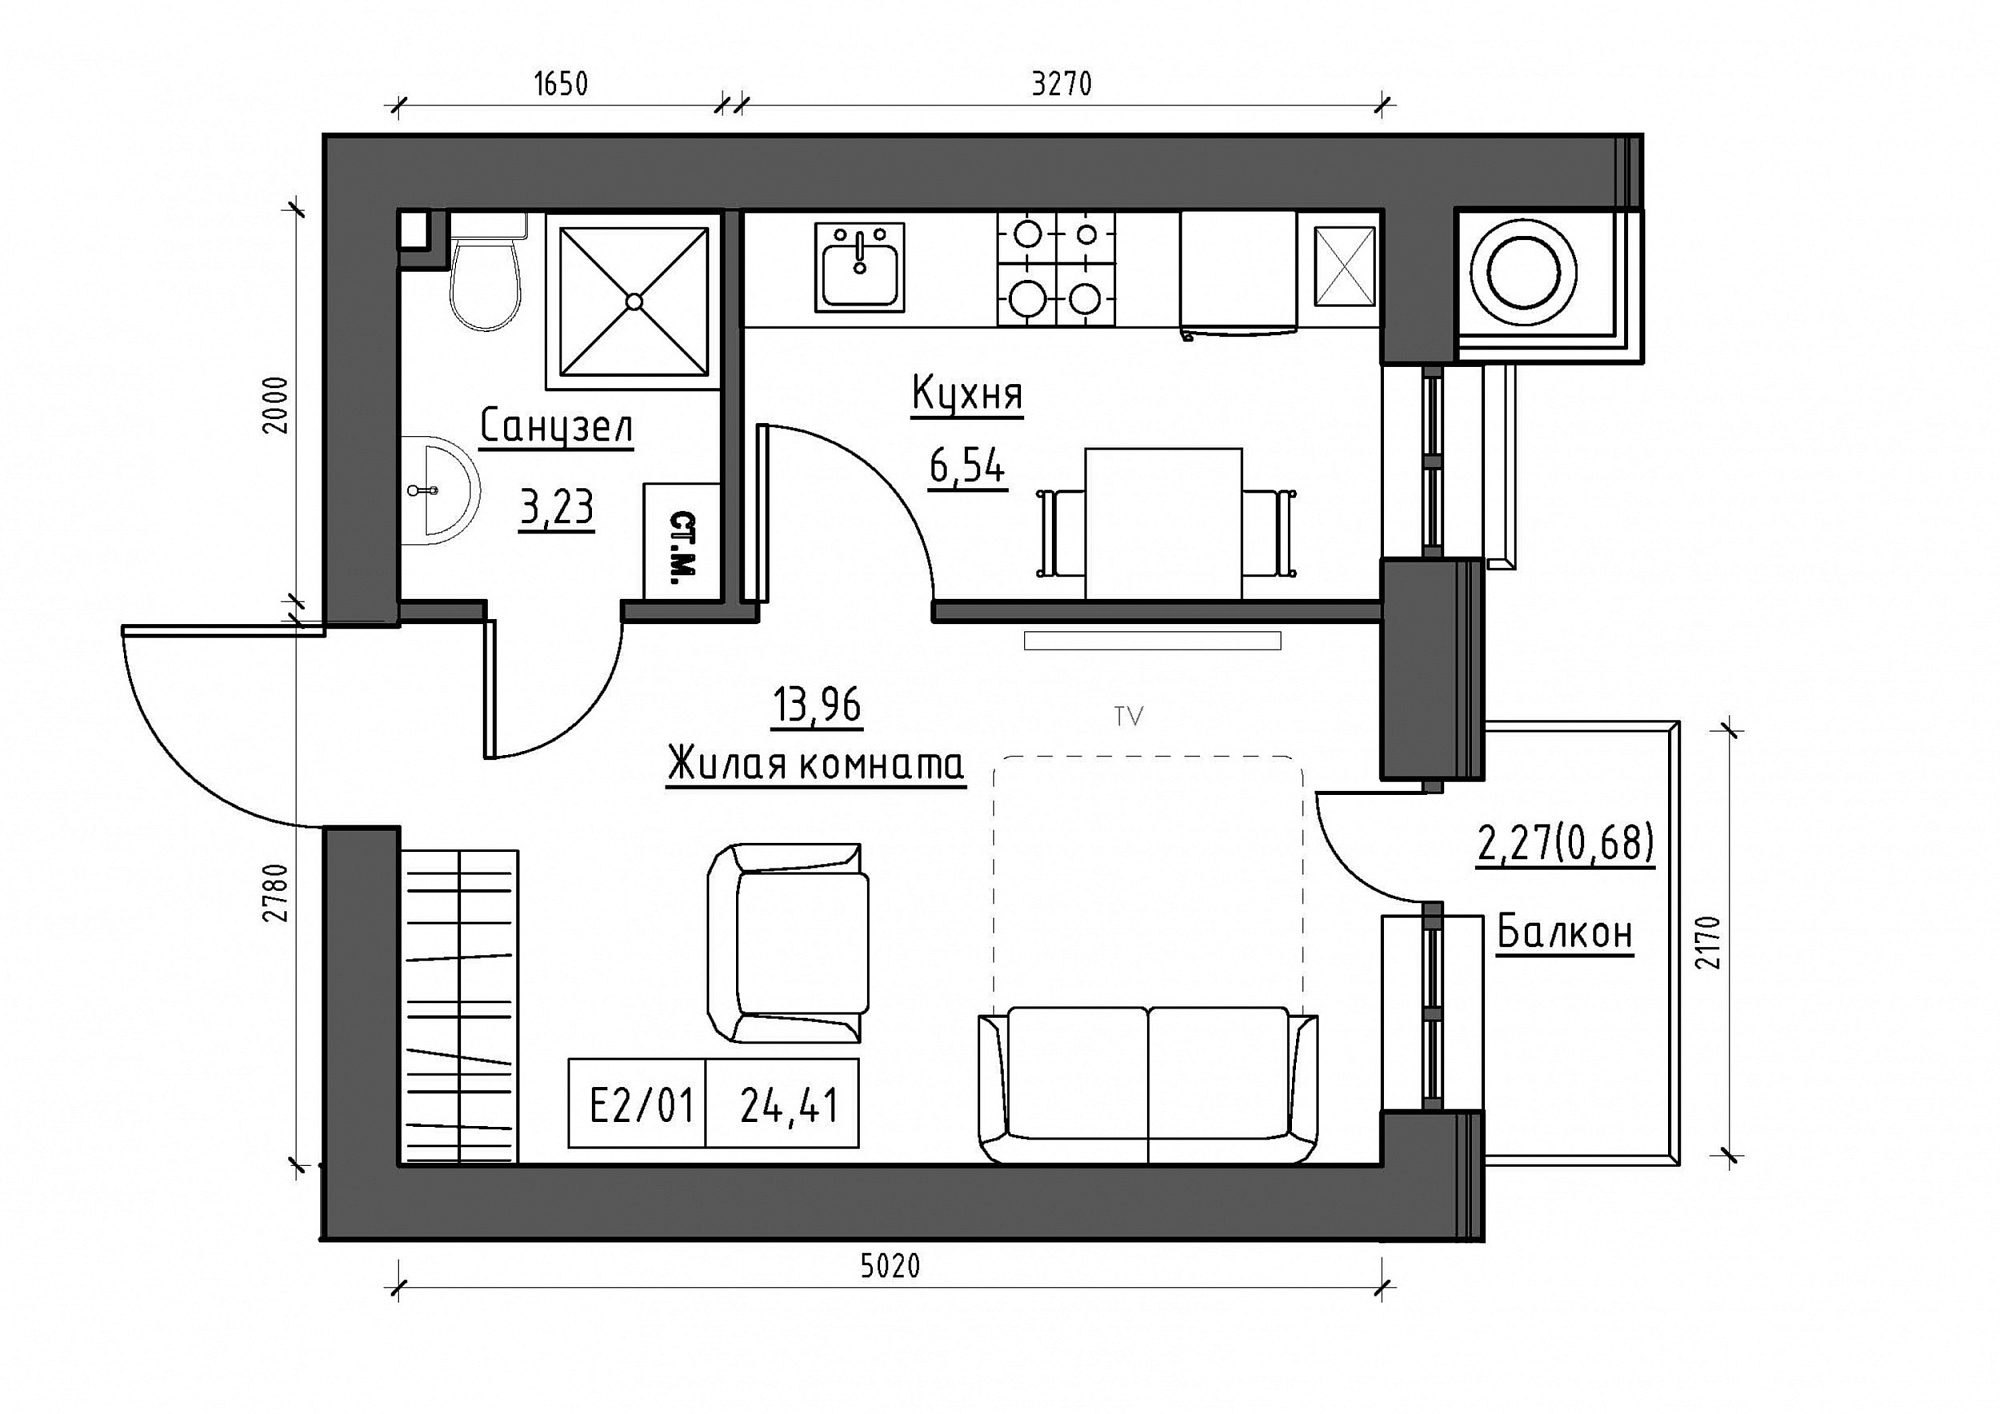 Планировка 1-к квартира площей 24.41м2, KS-011-04/0007.